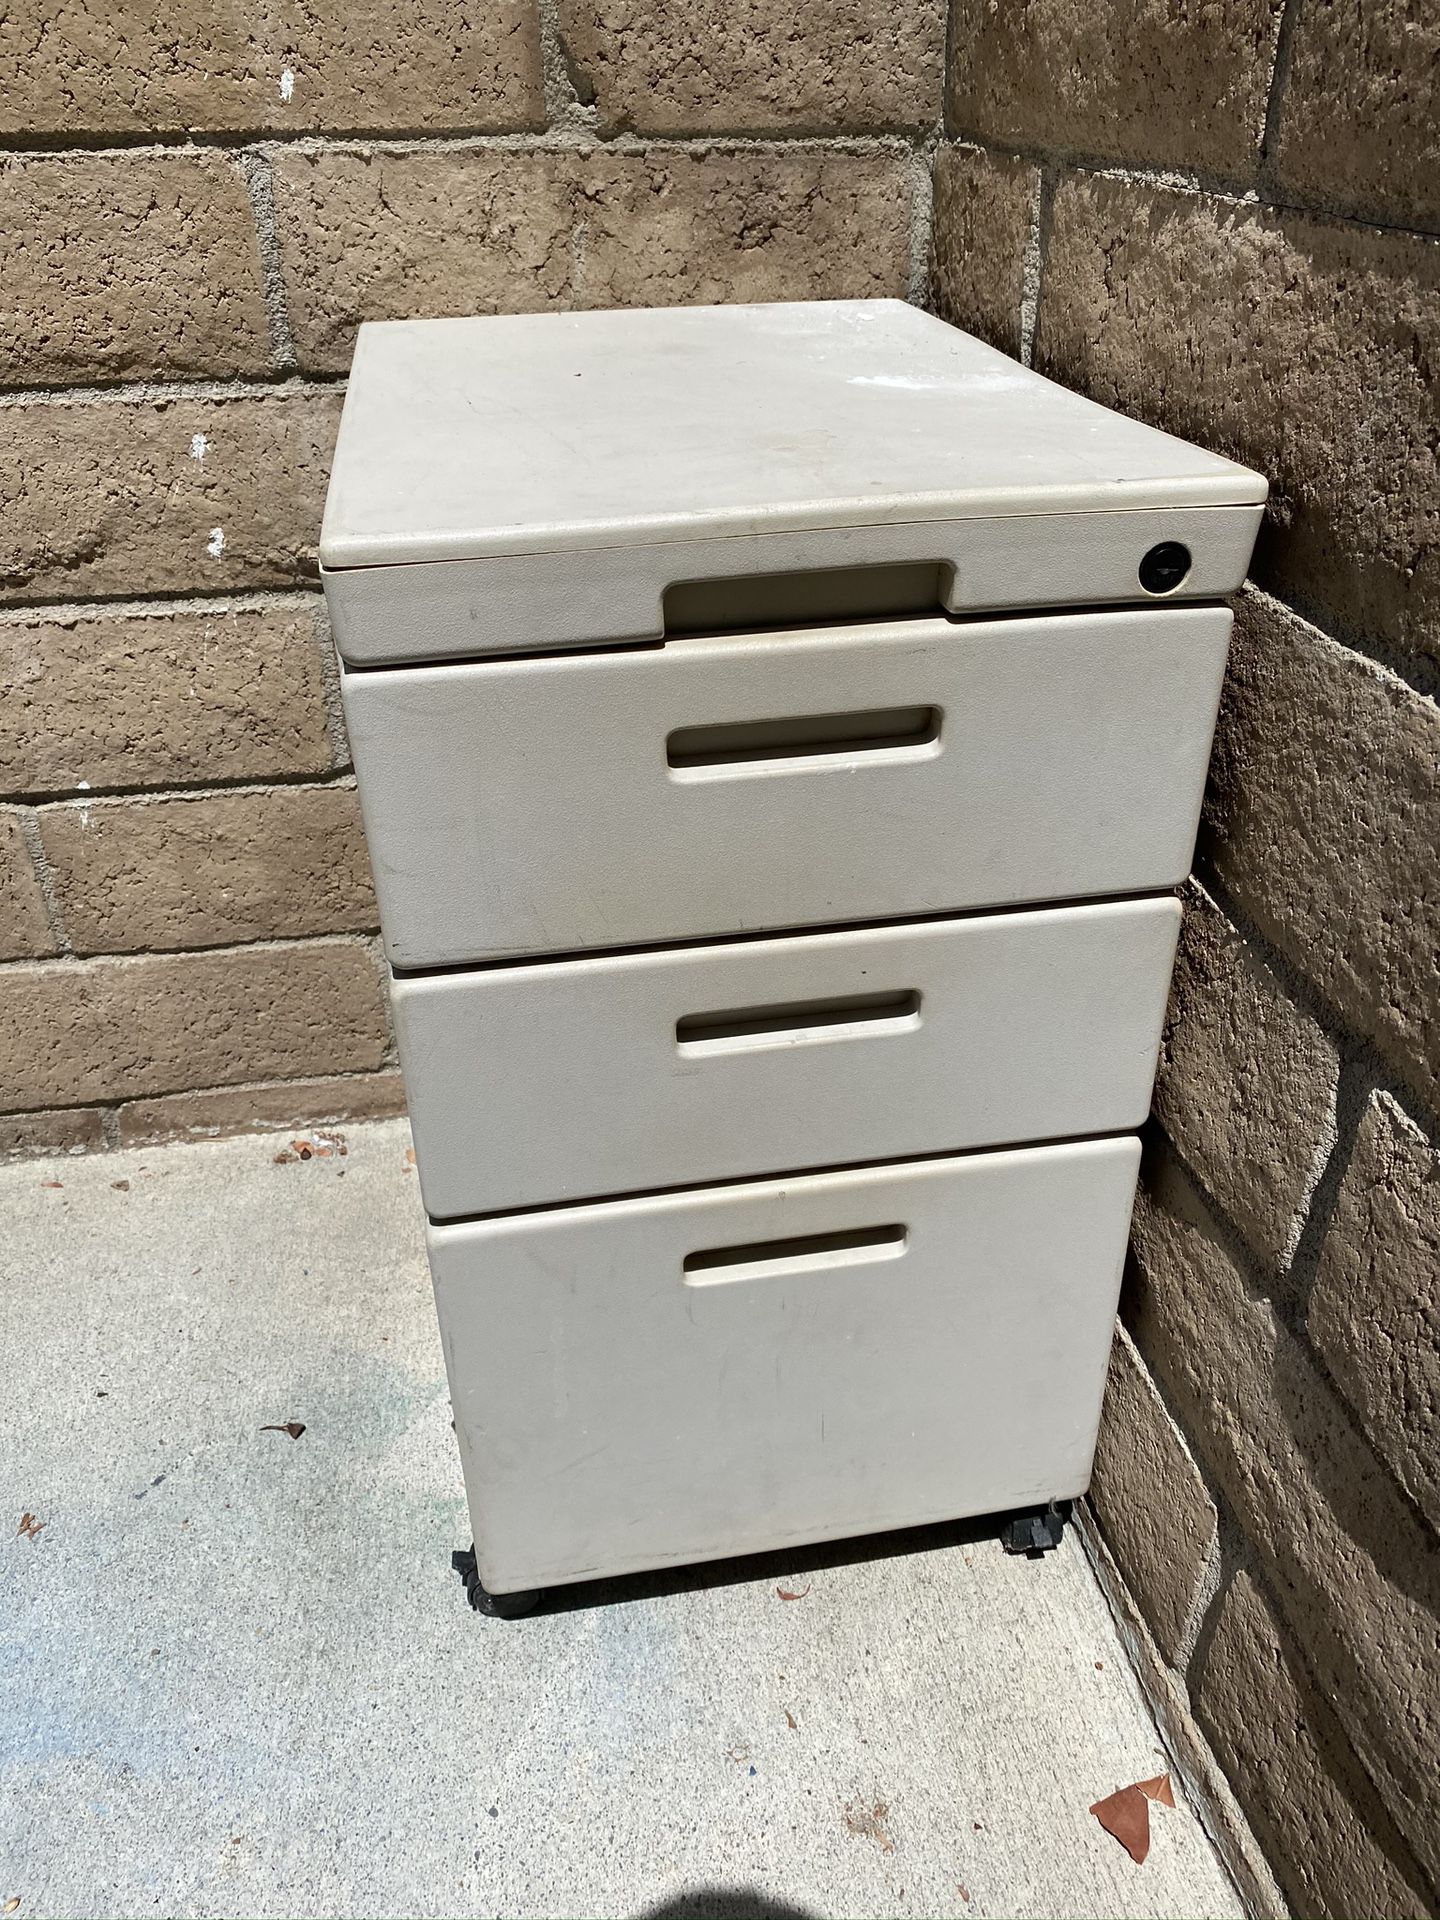 File cabinet